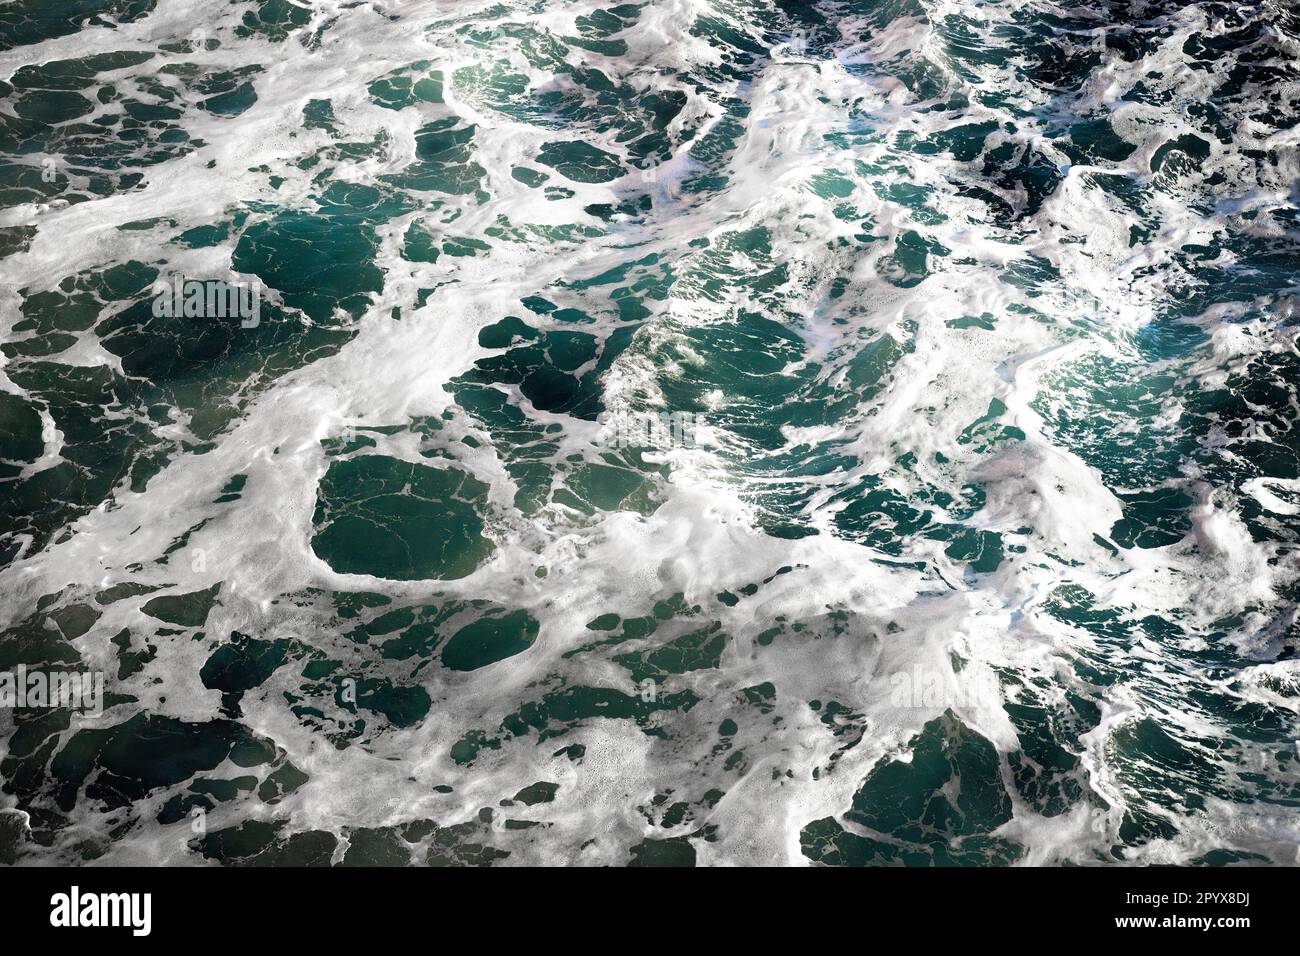 Onde blu, sfondo bianco di schiuma di mare Foto Stock